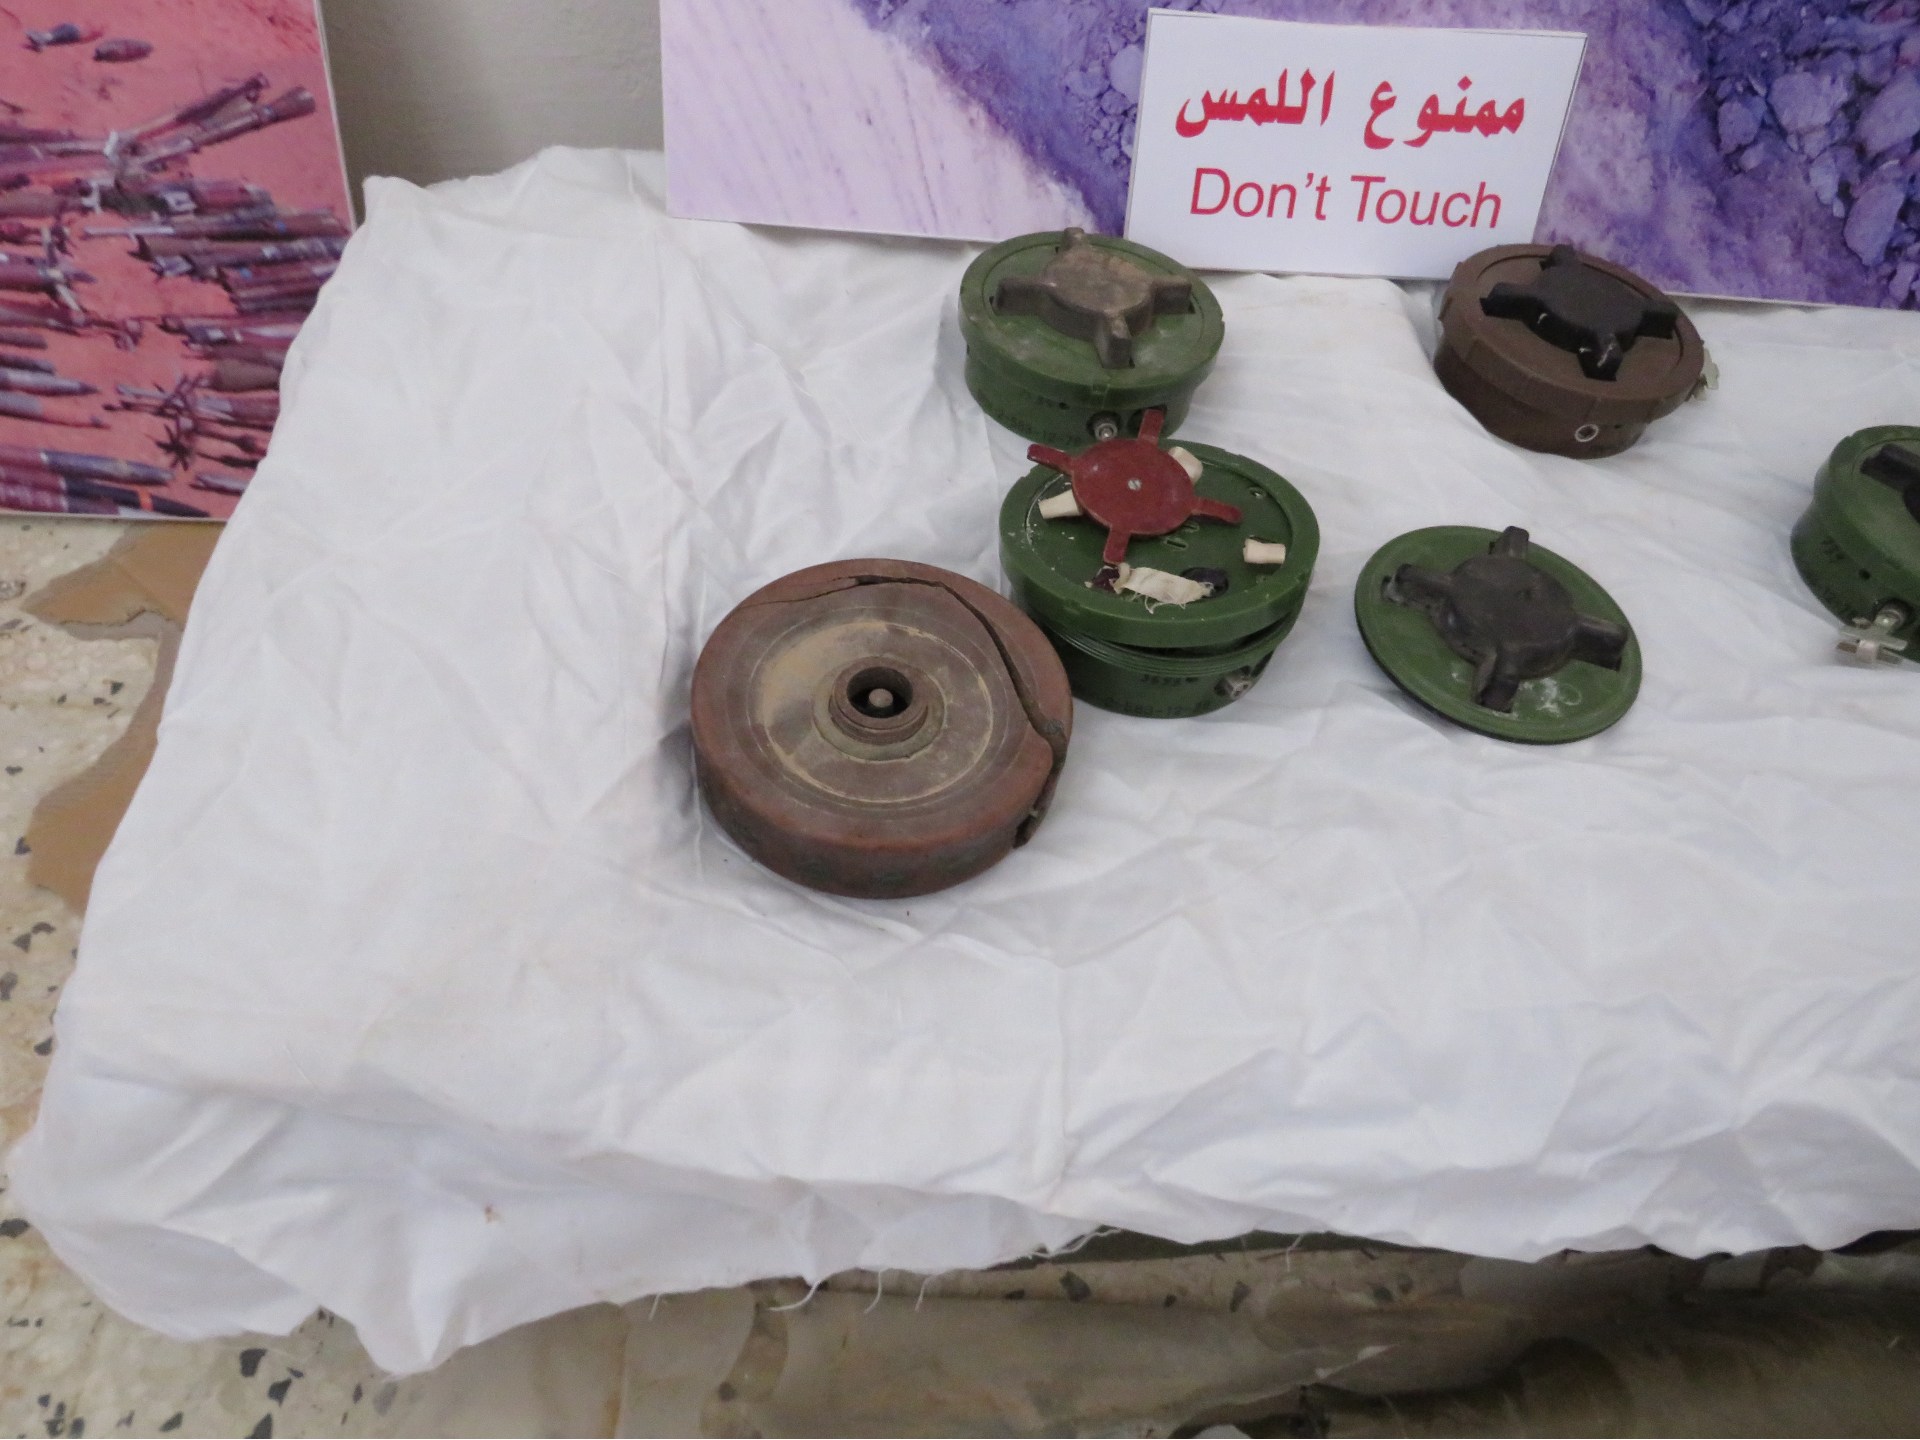 PMN-2 blast mines recovered from Tripoli (MEE/Daniel Hilton)